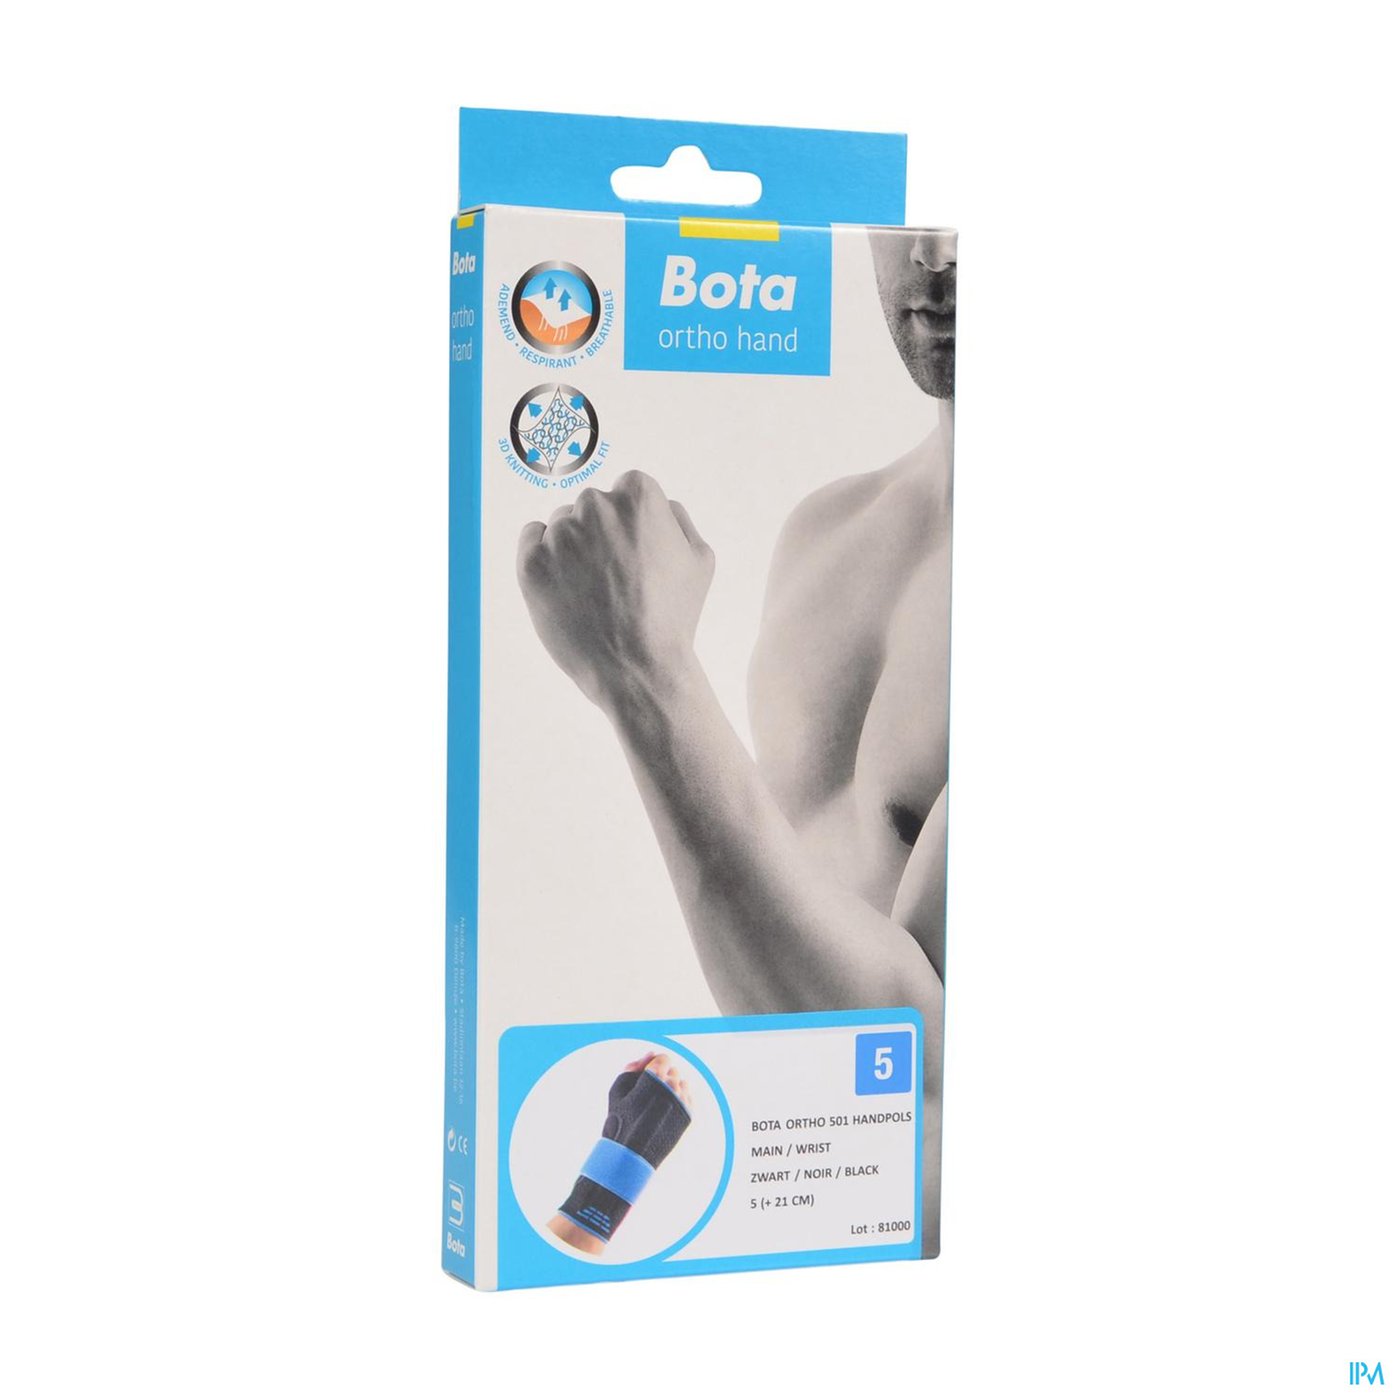 Bota Ortho Handpolsbandage 501 Zwart N5 packshot